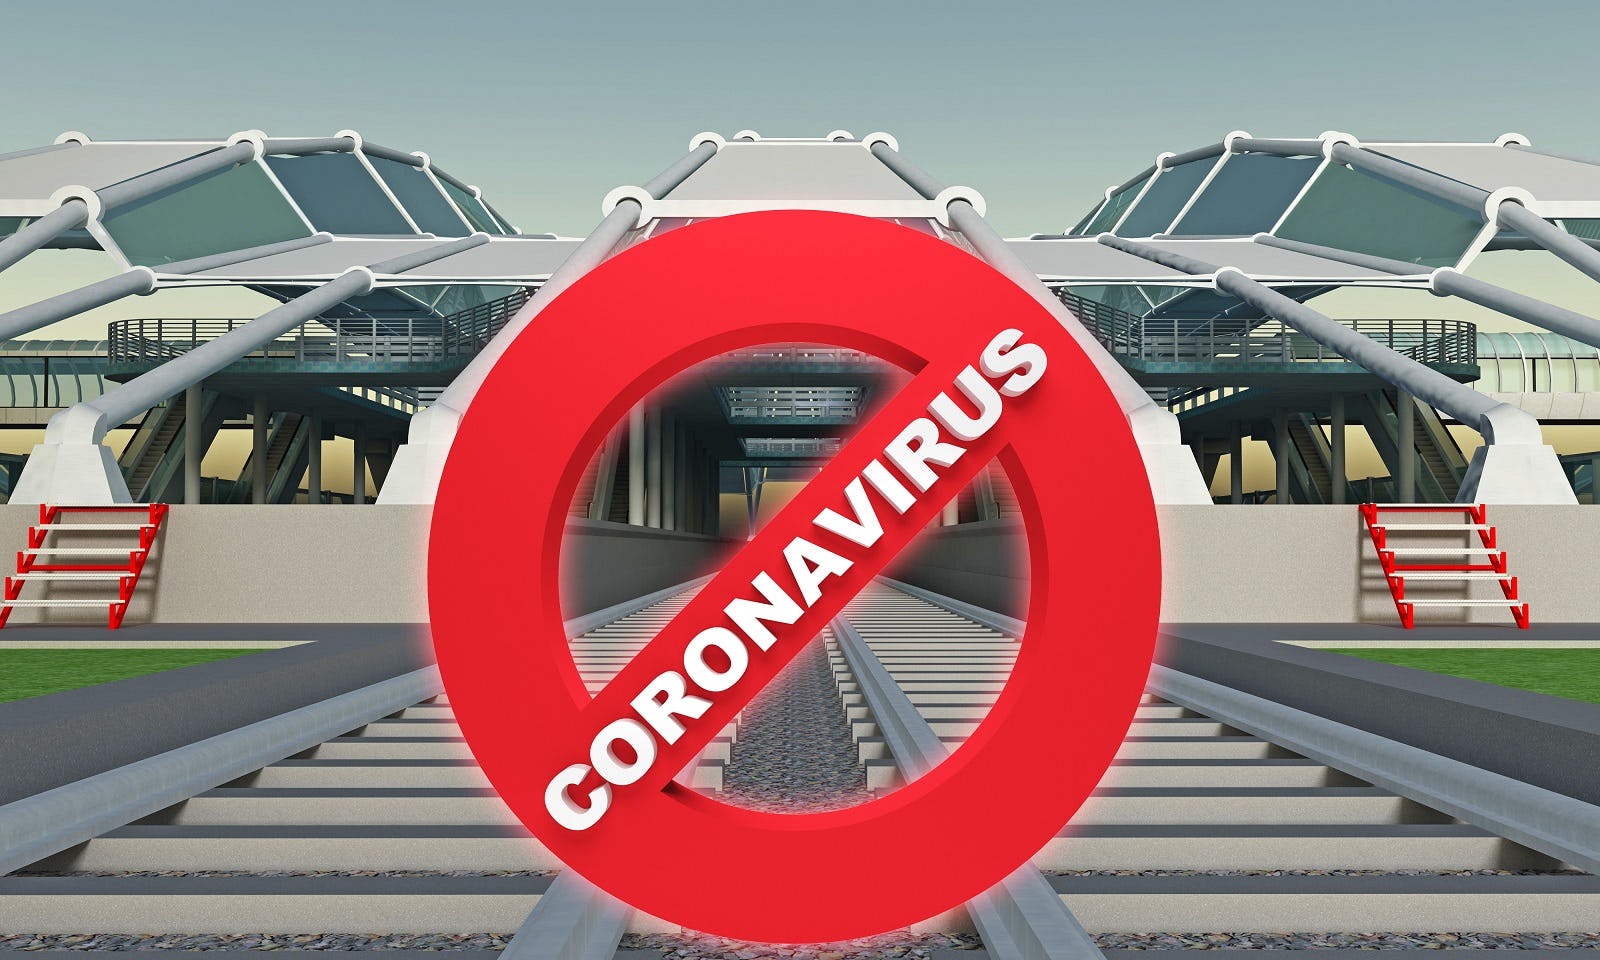 Rechtvaardigt coronavirus een beroep op overmacht?